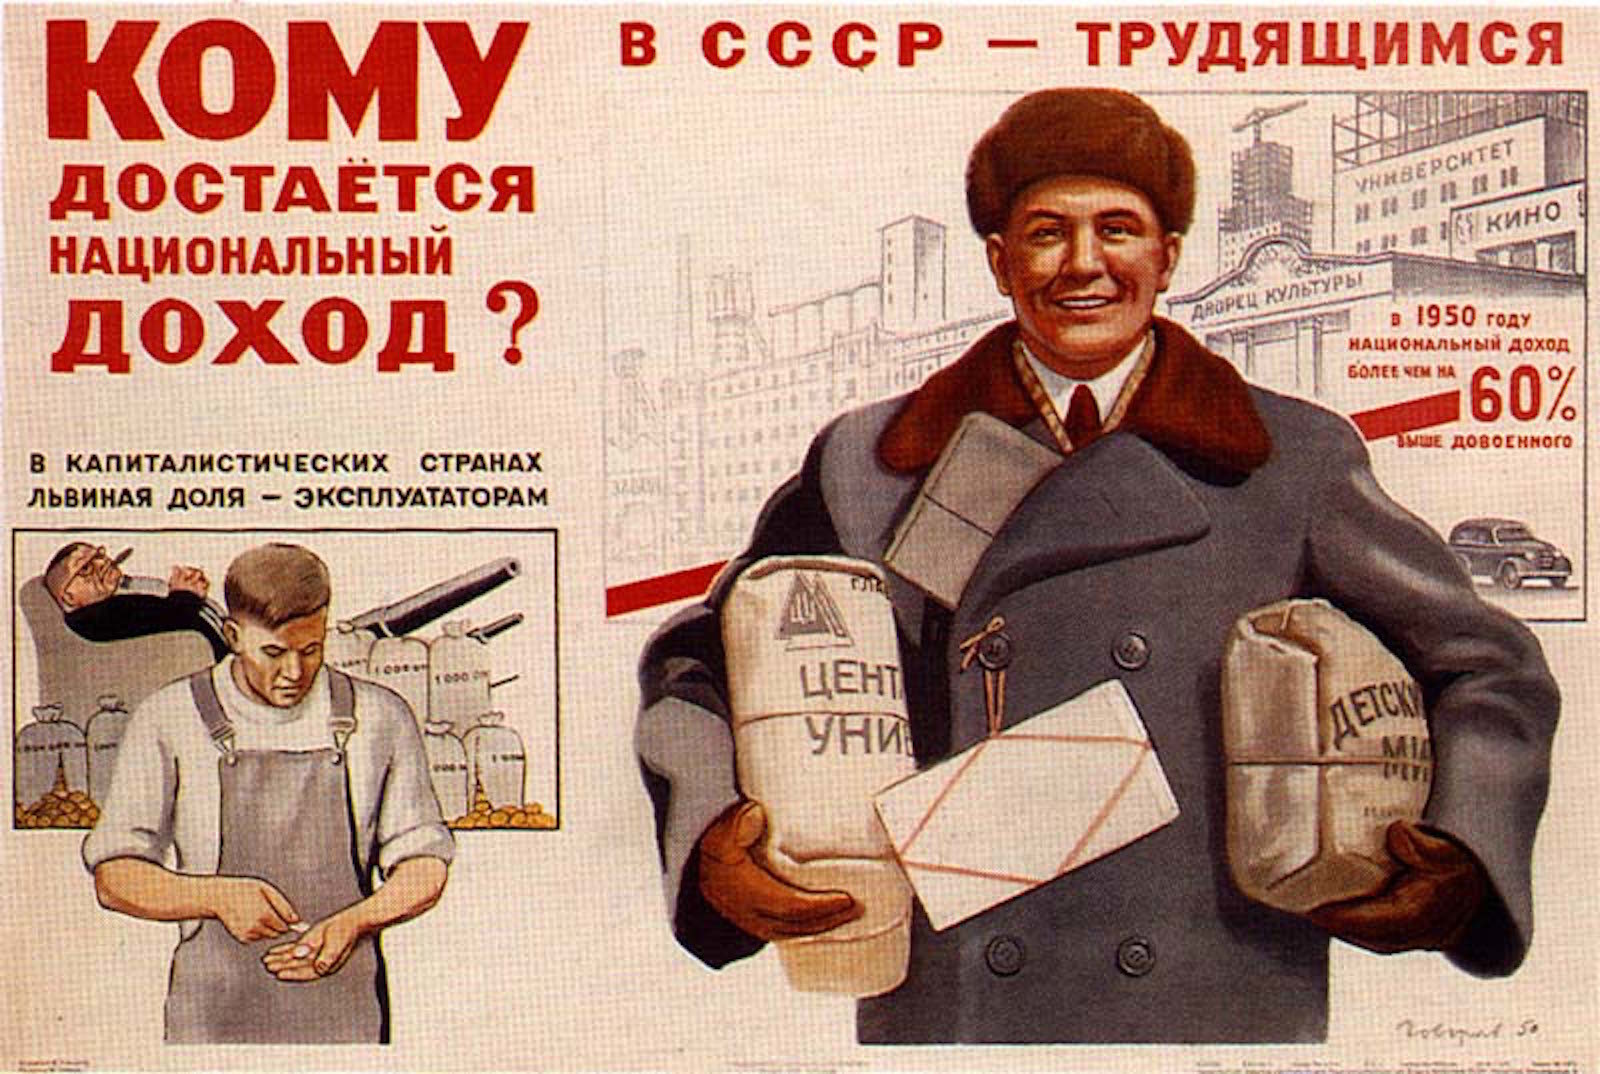 Οι ελευθερίες και τα δικαιώματα του ατόμου στην ΕΣΣΔ